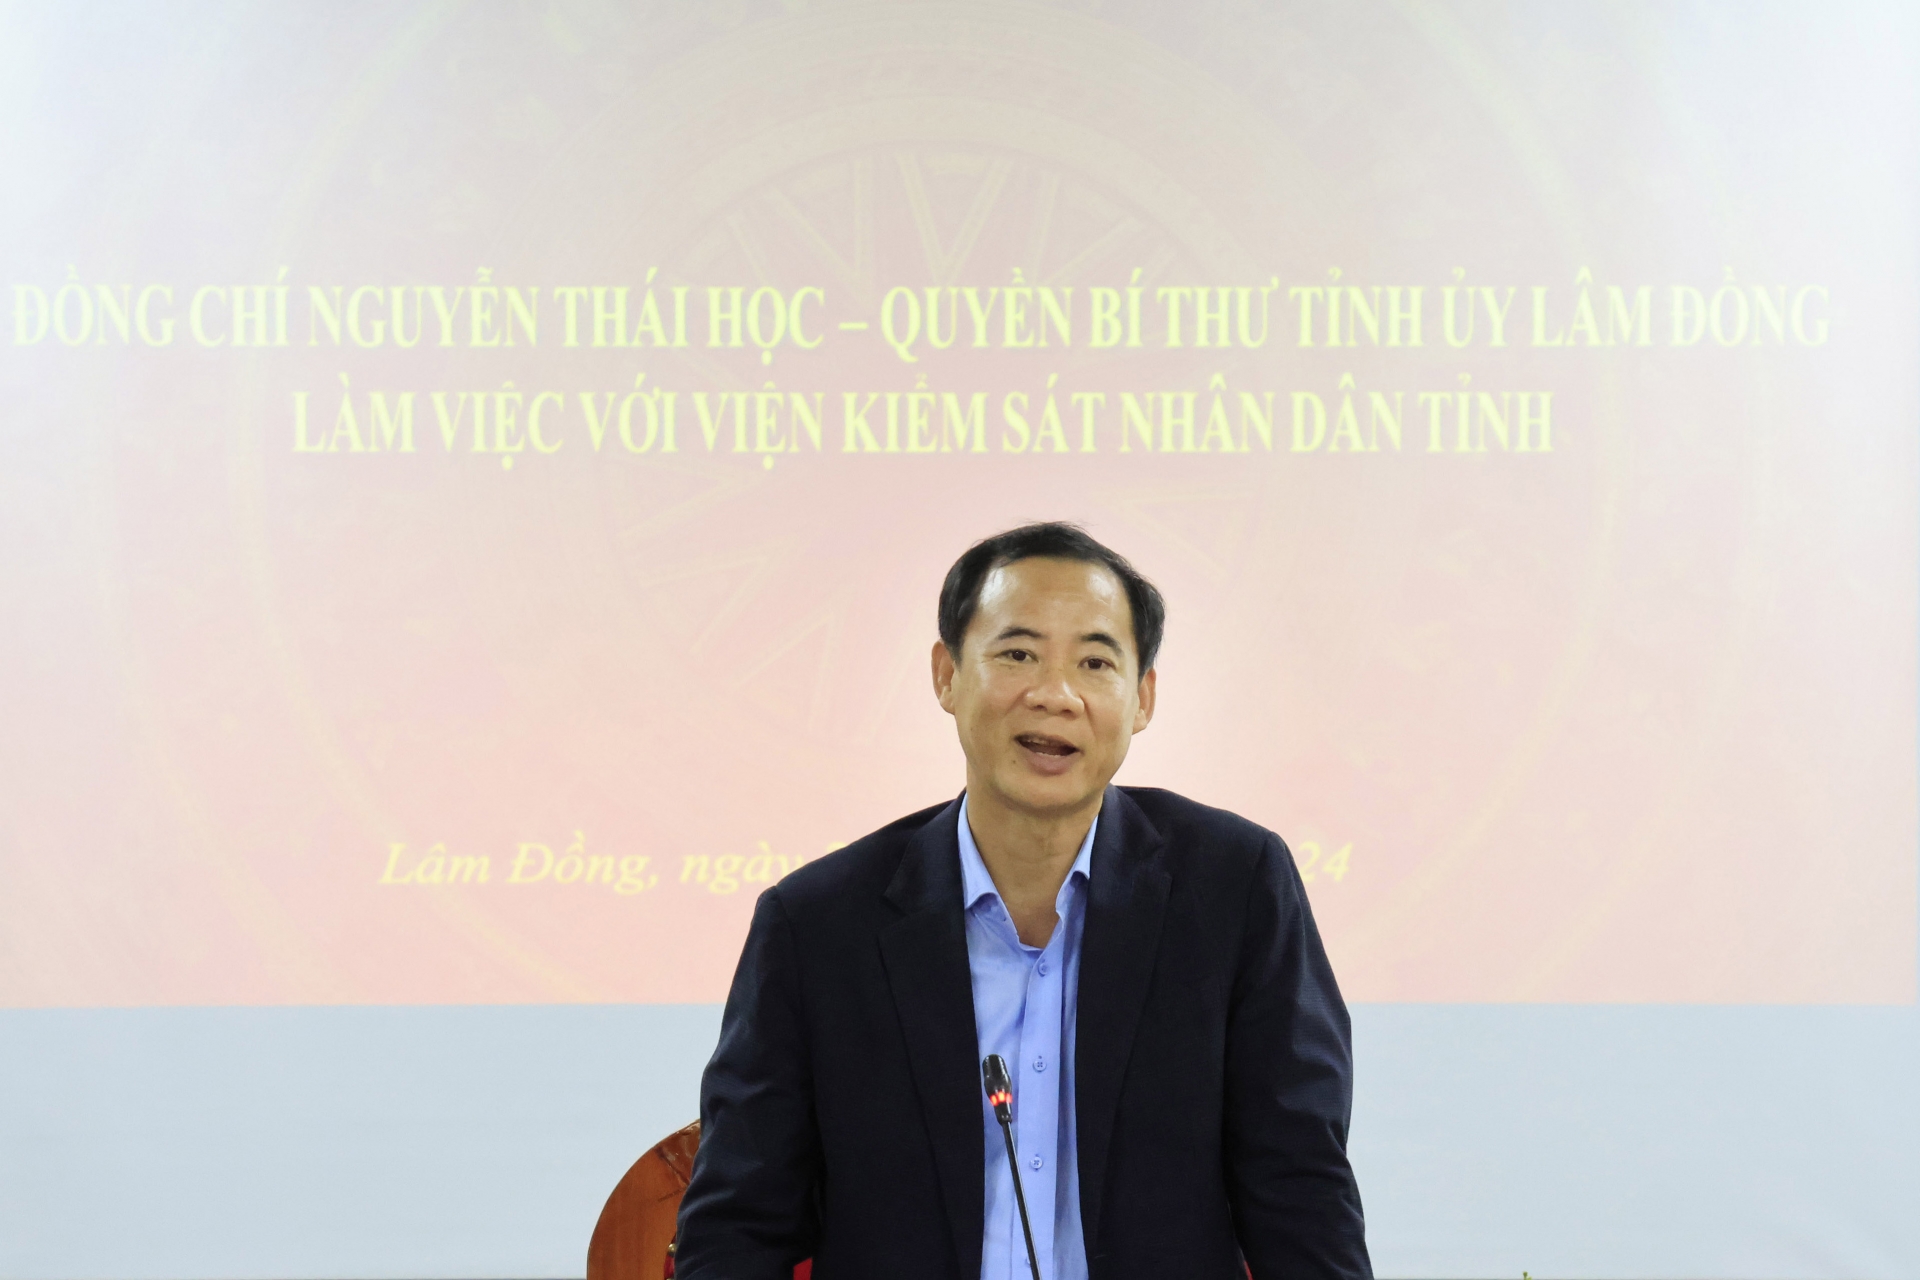 Đồng chí Nguyễn Thái Học - quyền Bí thư Tỉnh ủy phát biểu chỉ đạo tại buổi làm việc